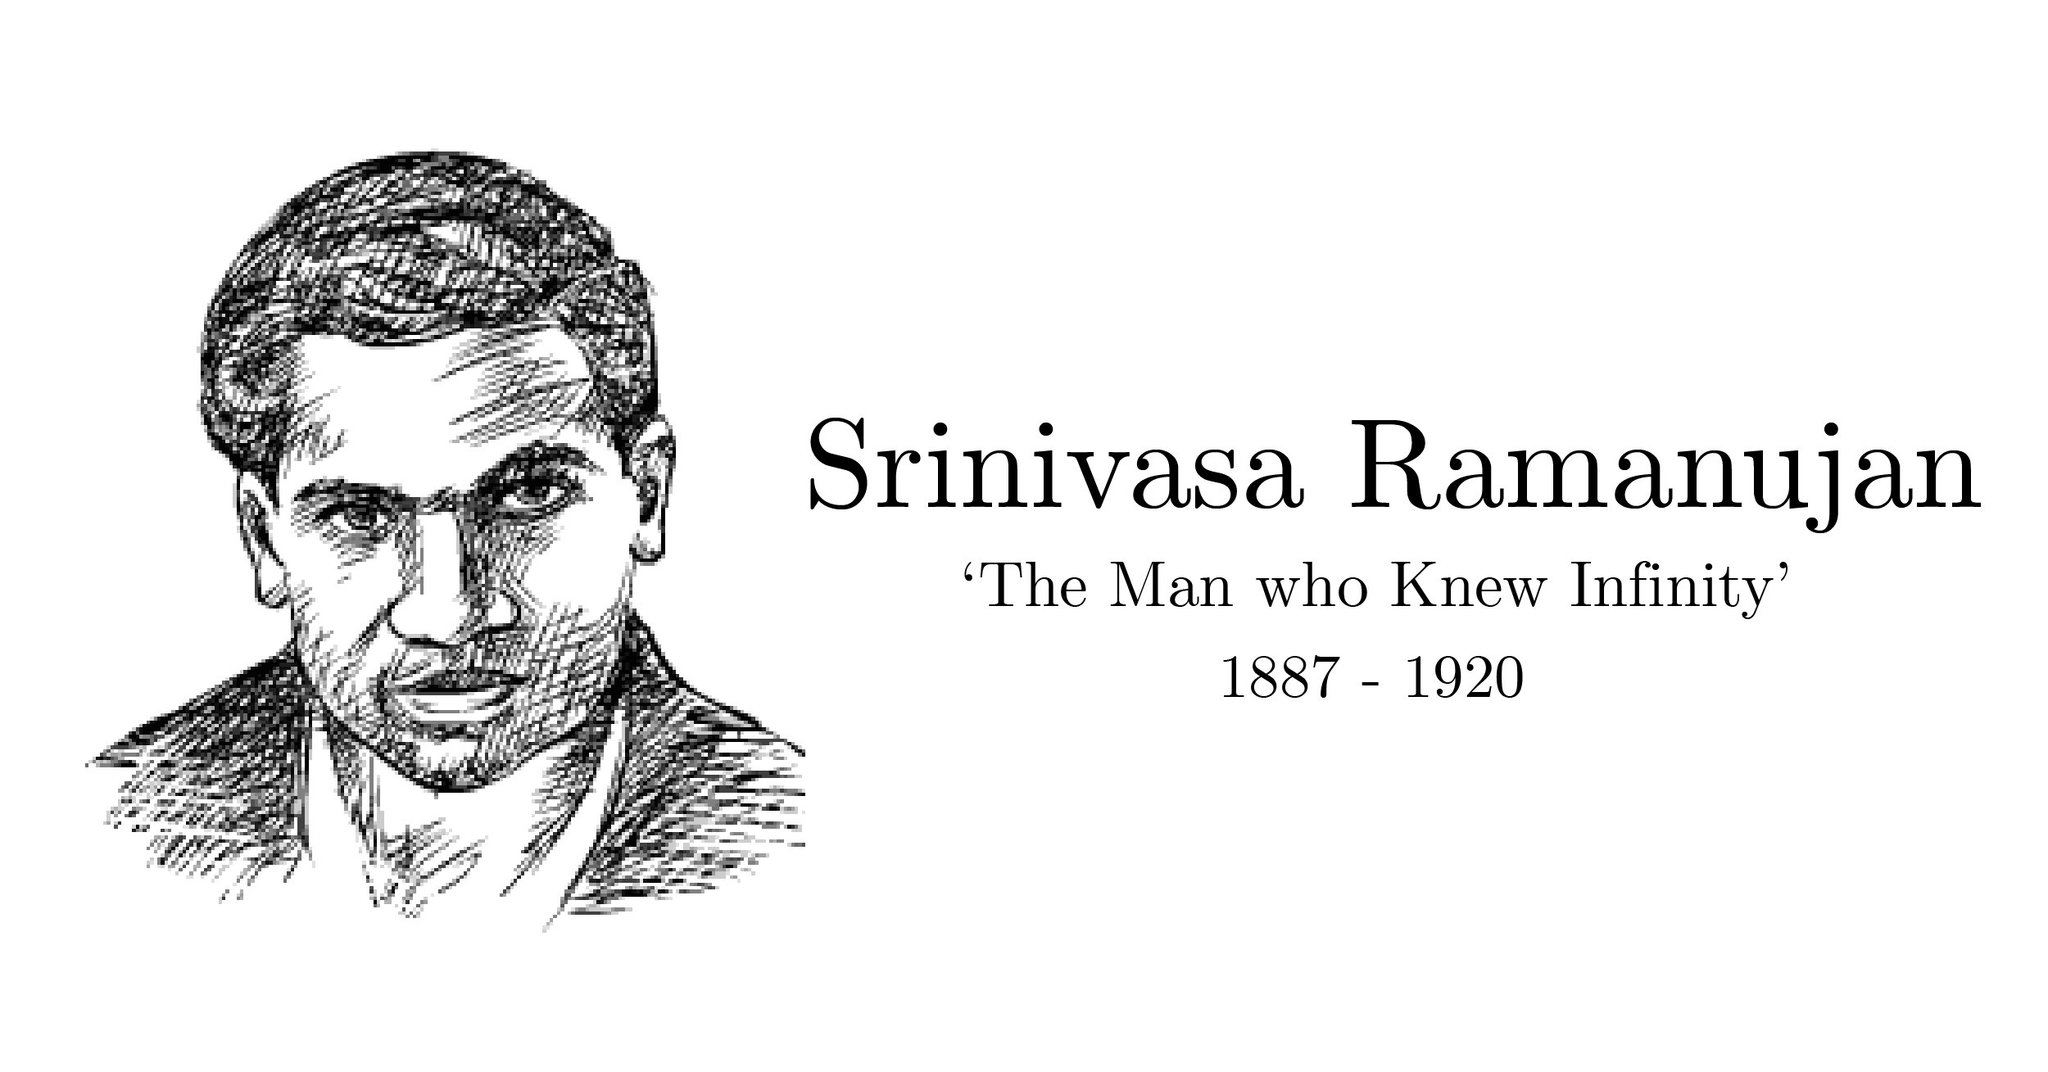 Srinivasa ramanujan hi-res stock photography and images - Alamy